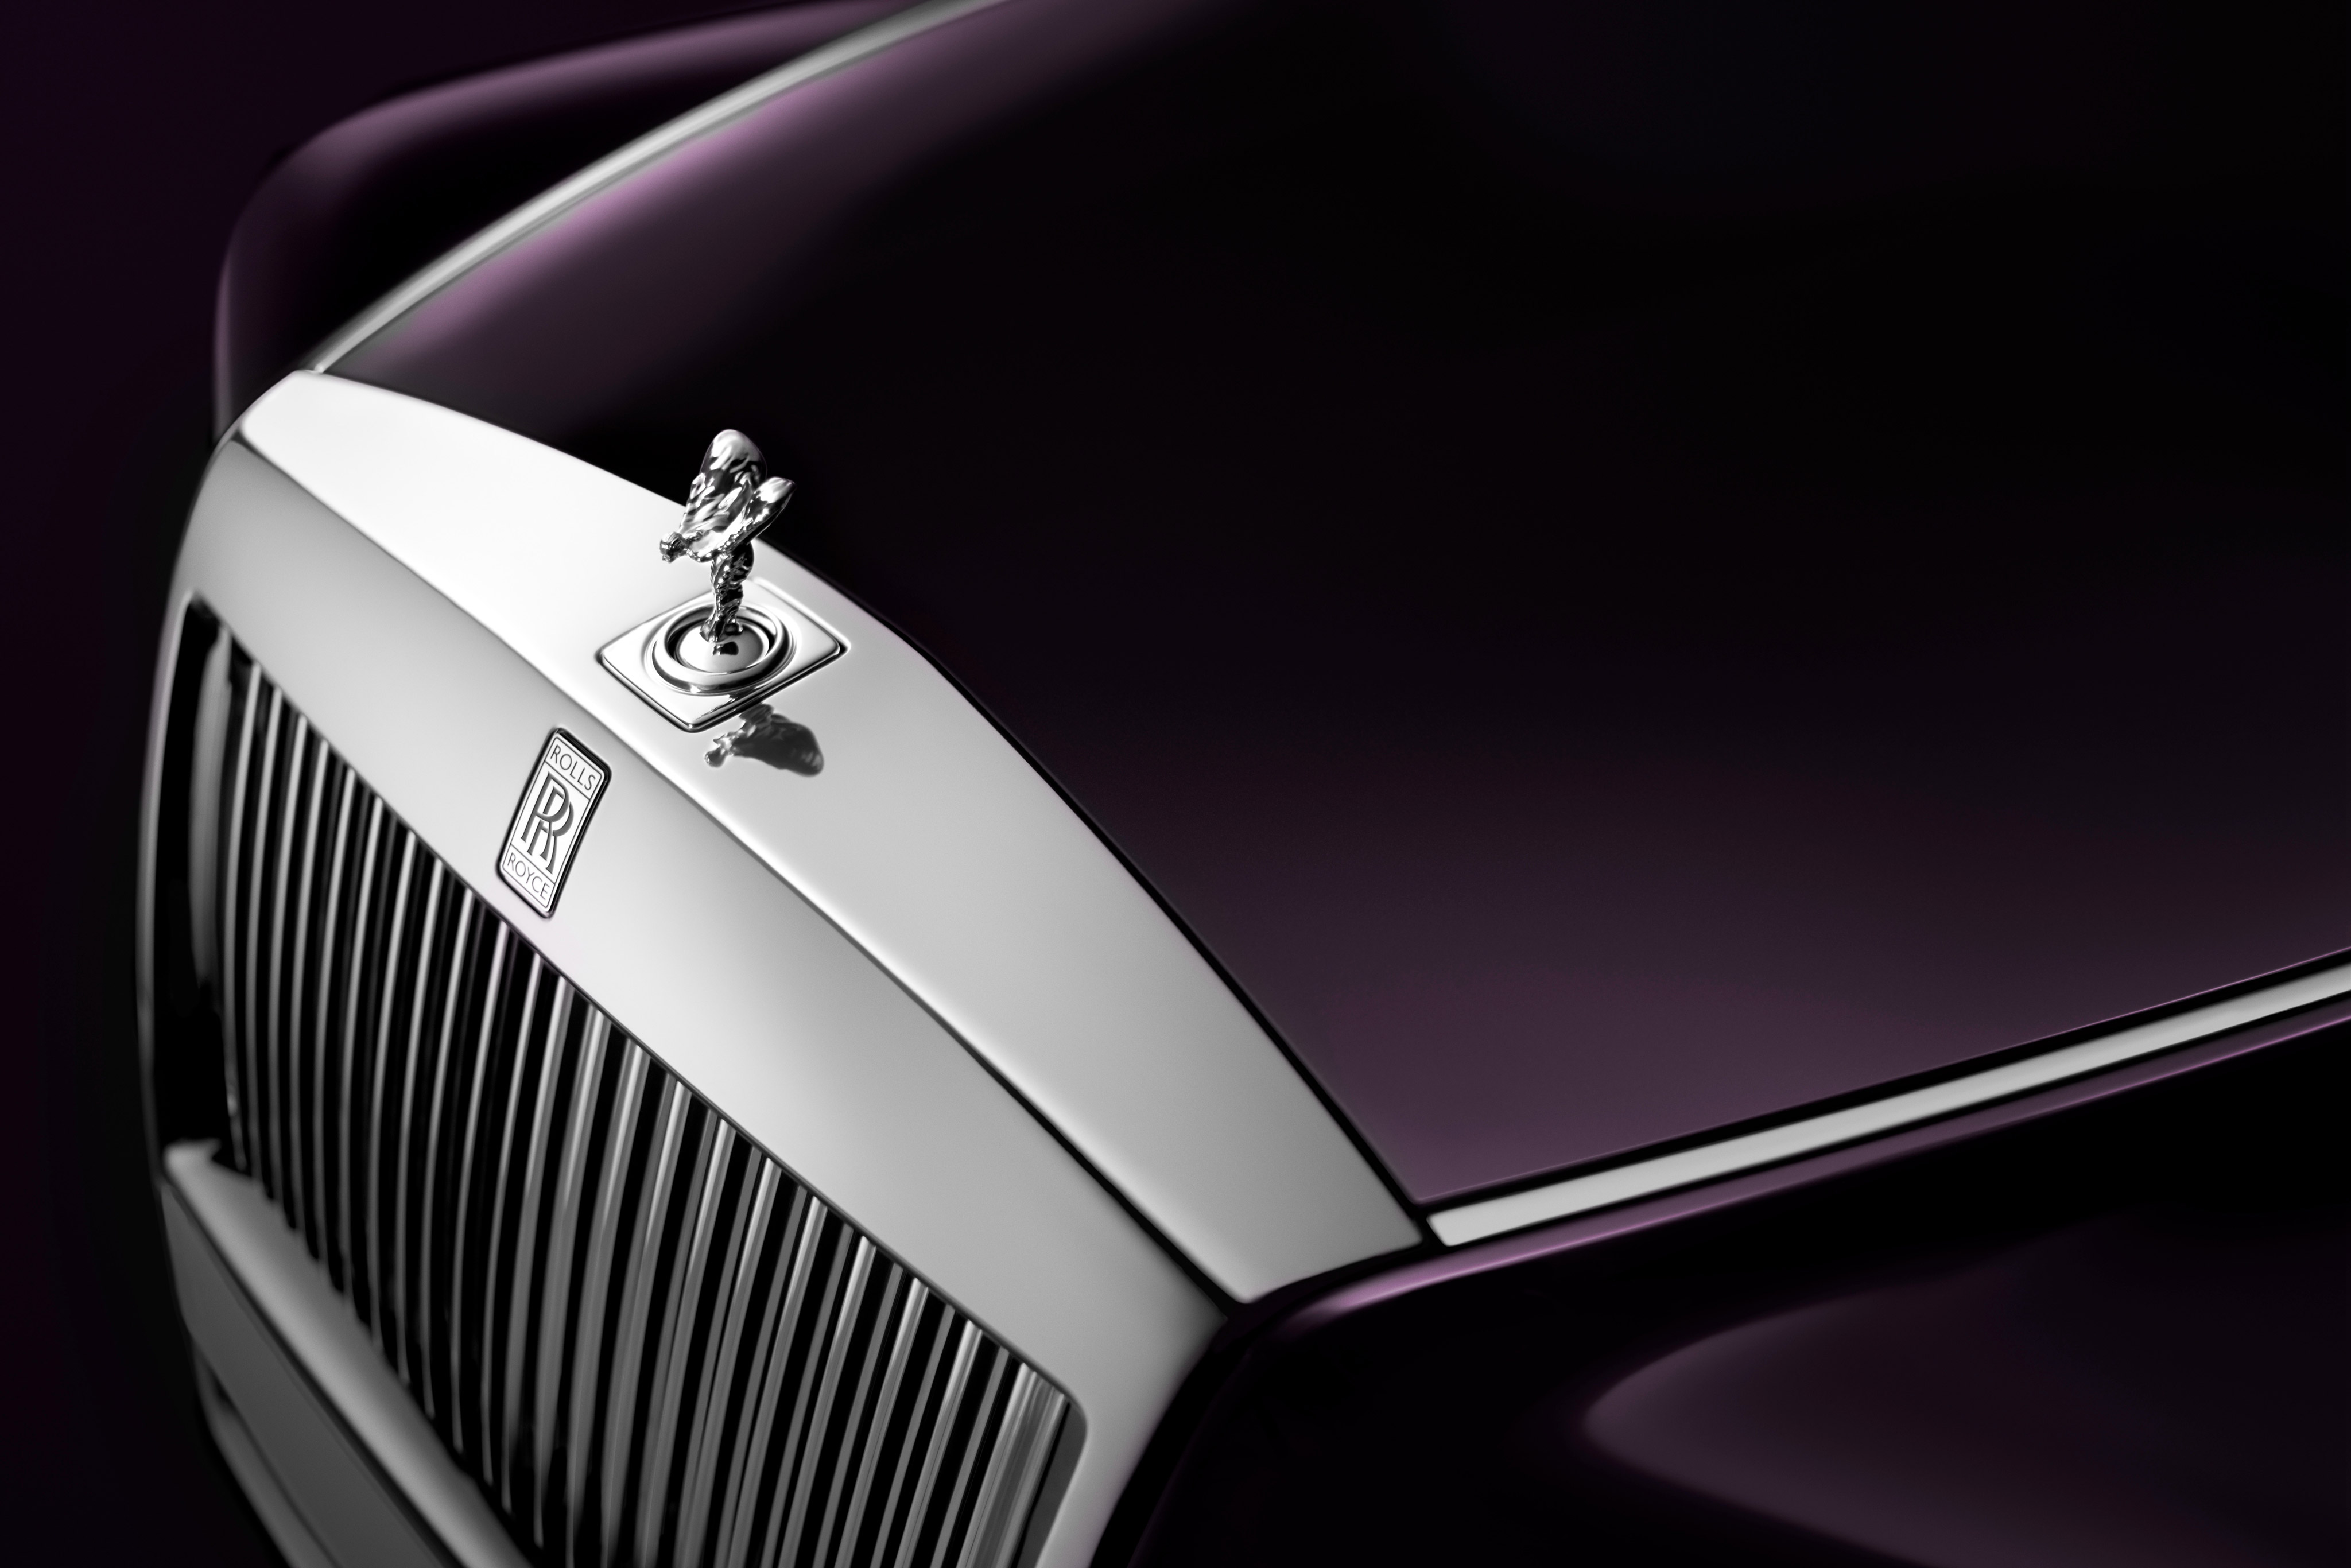 Rolls Royce Phantom Ewb 2017 Wallpapers